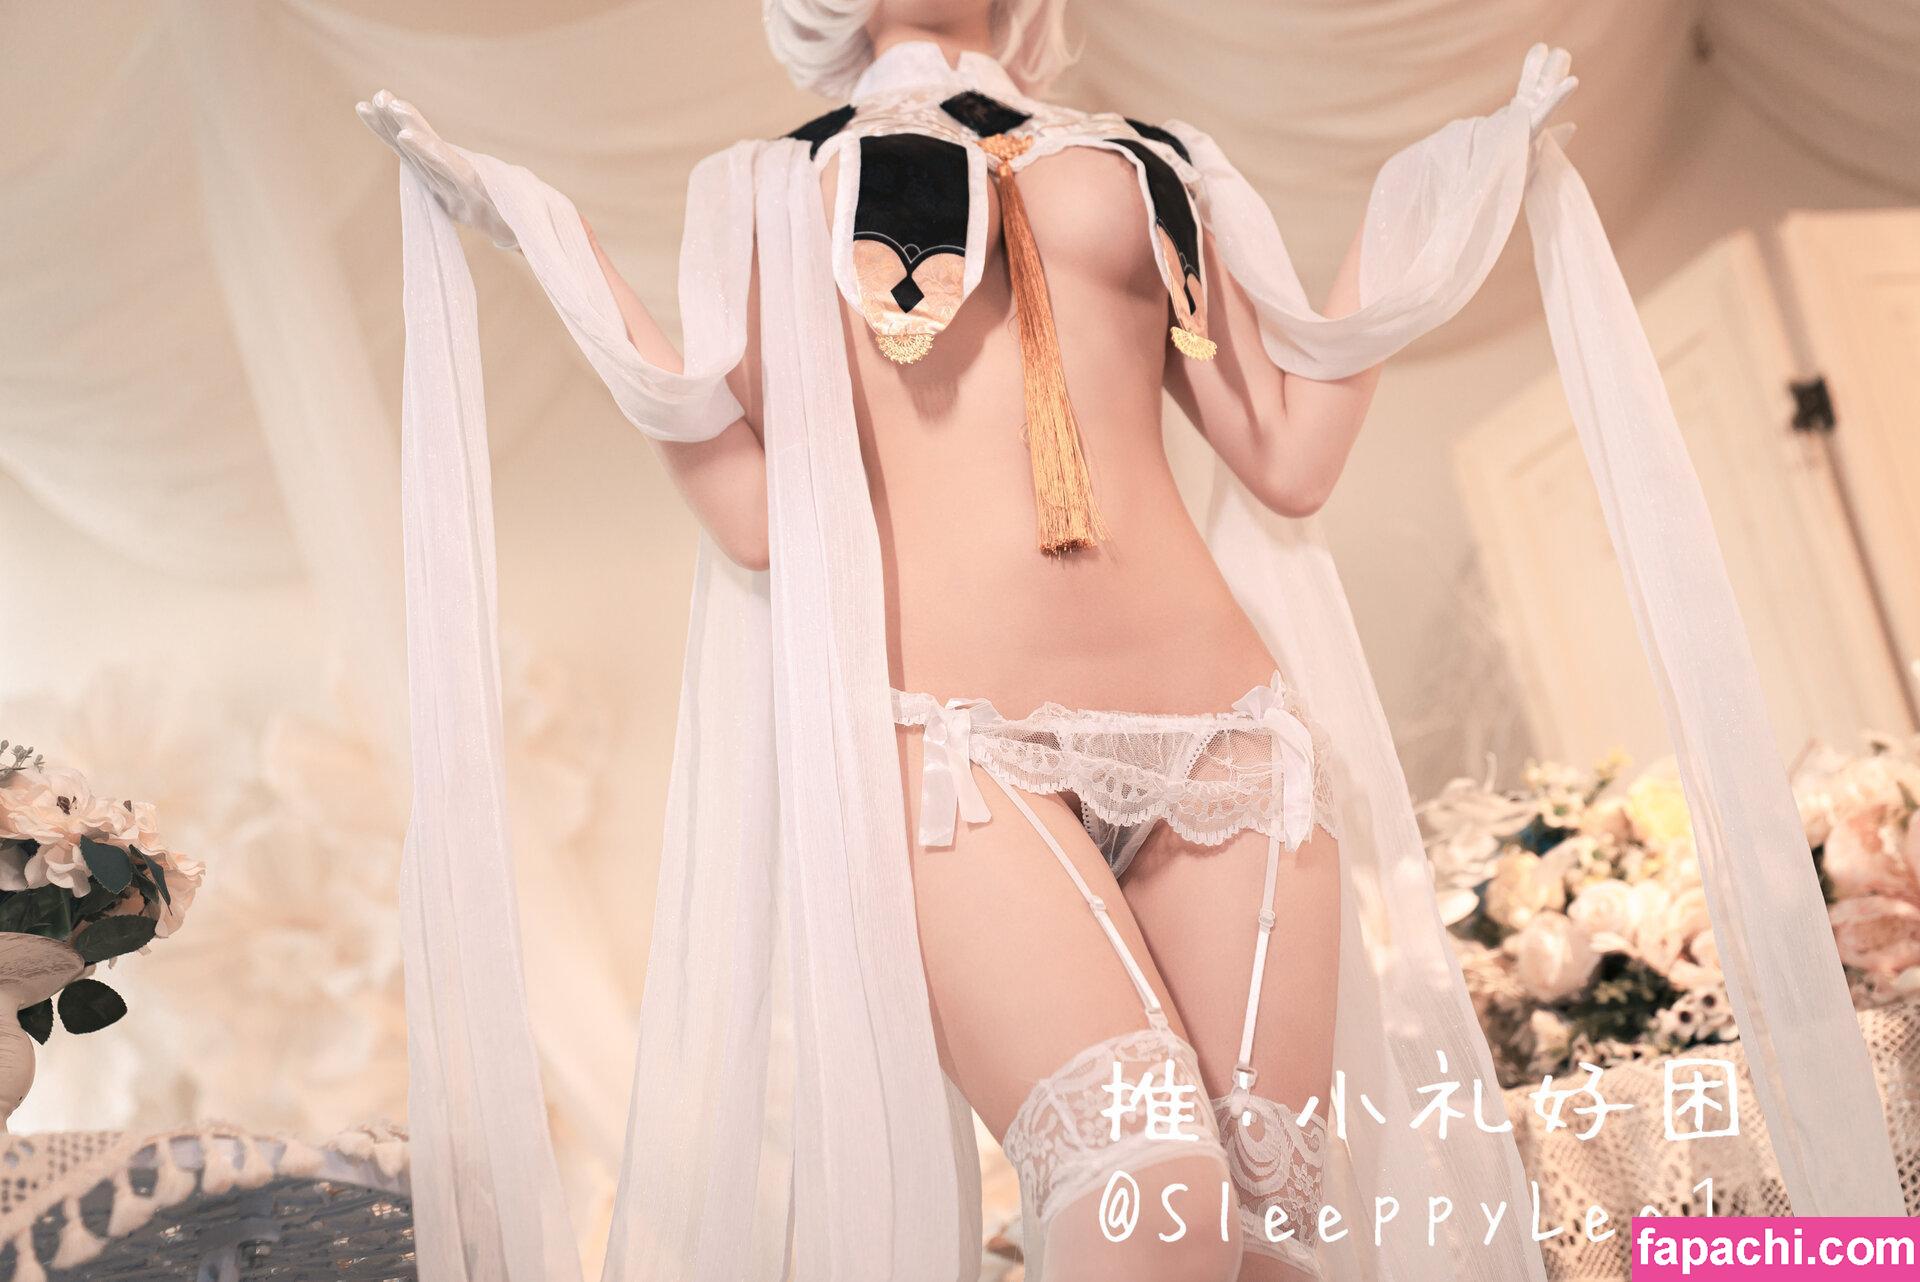 Sleeppylee1 / sleepylee__ leaked nude photo #0127 from OnlyFans/Patreon